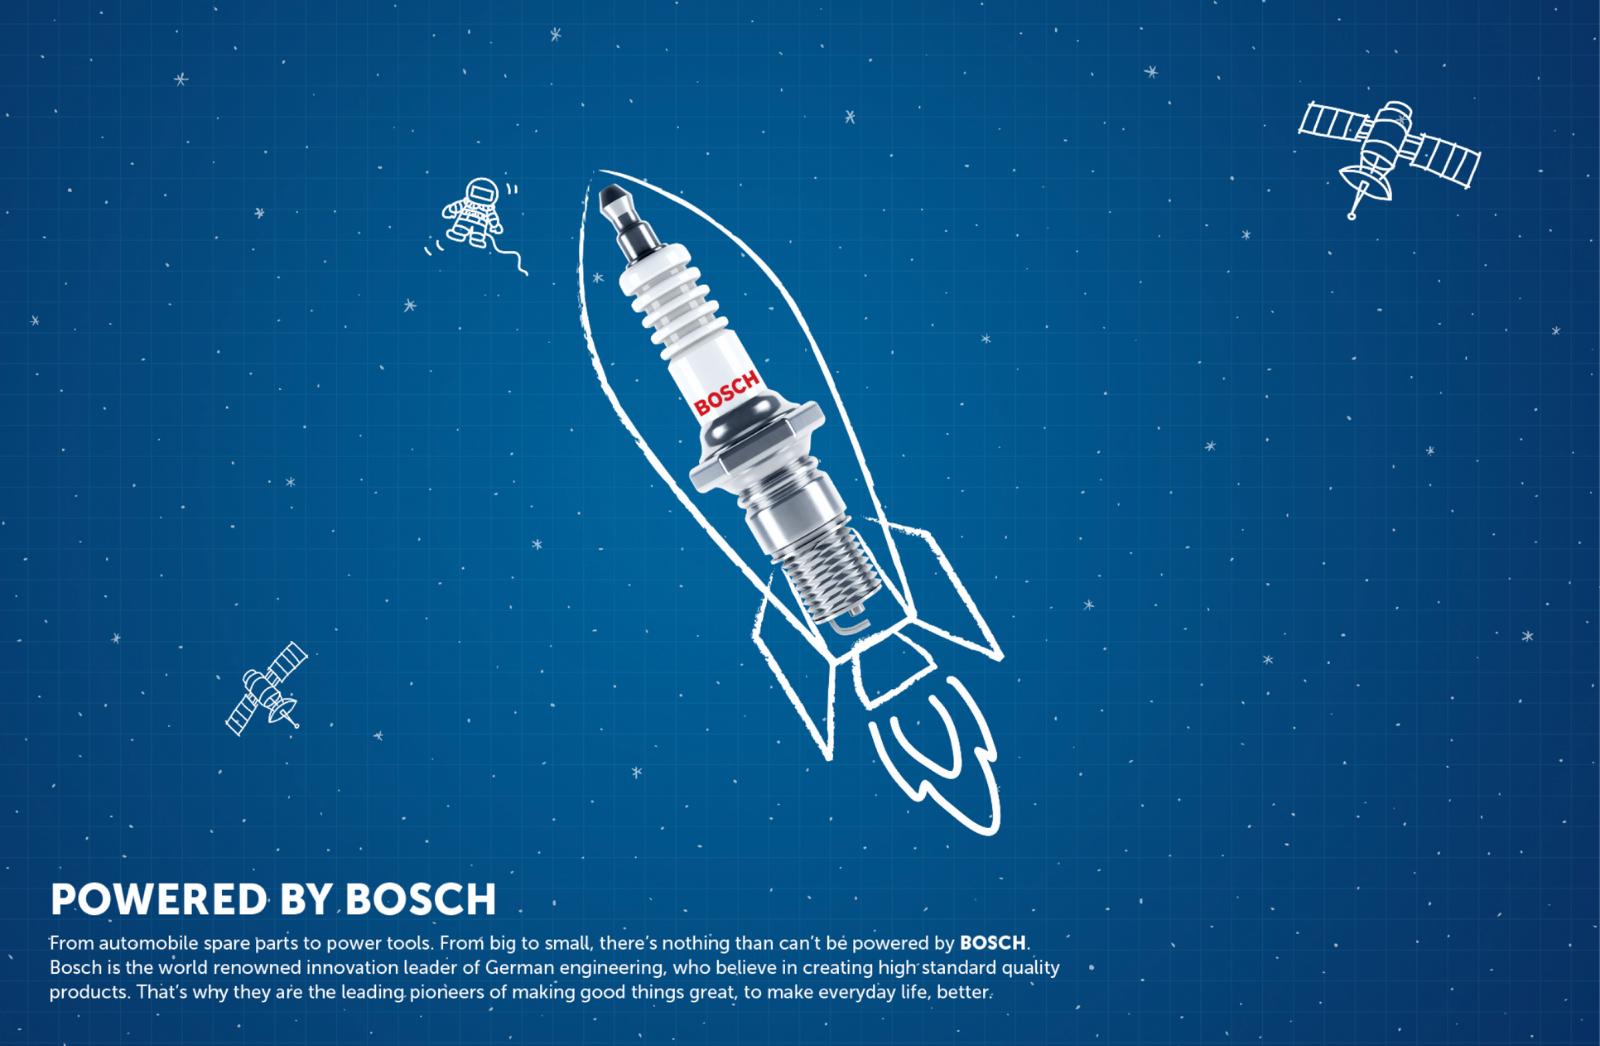 BOSCH : Powered by Bosch